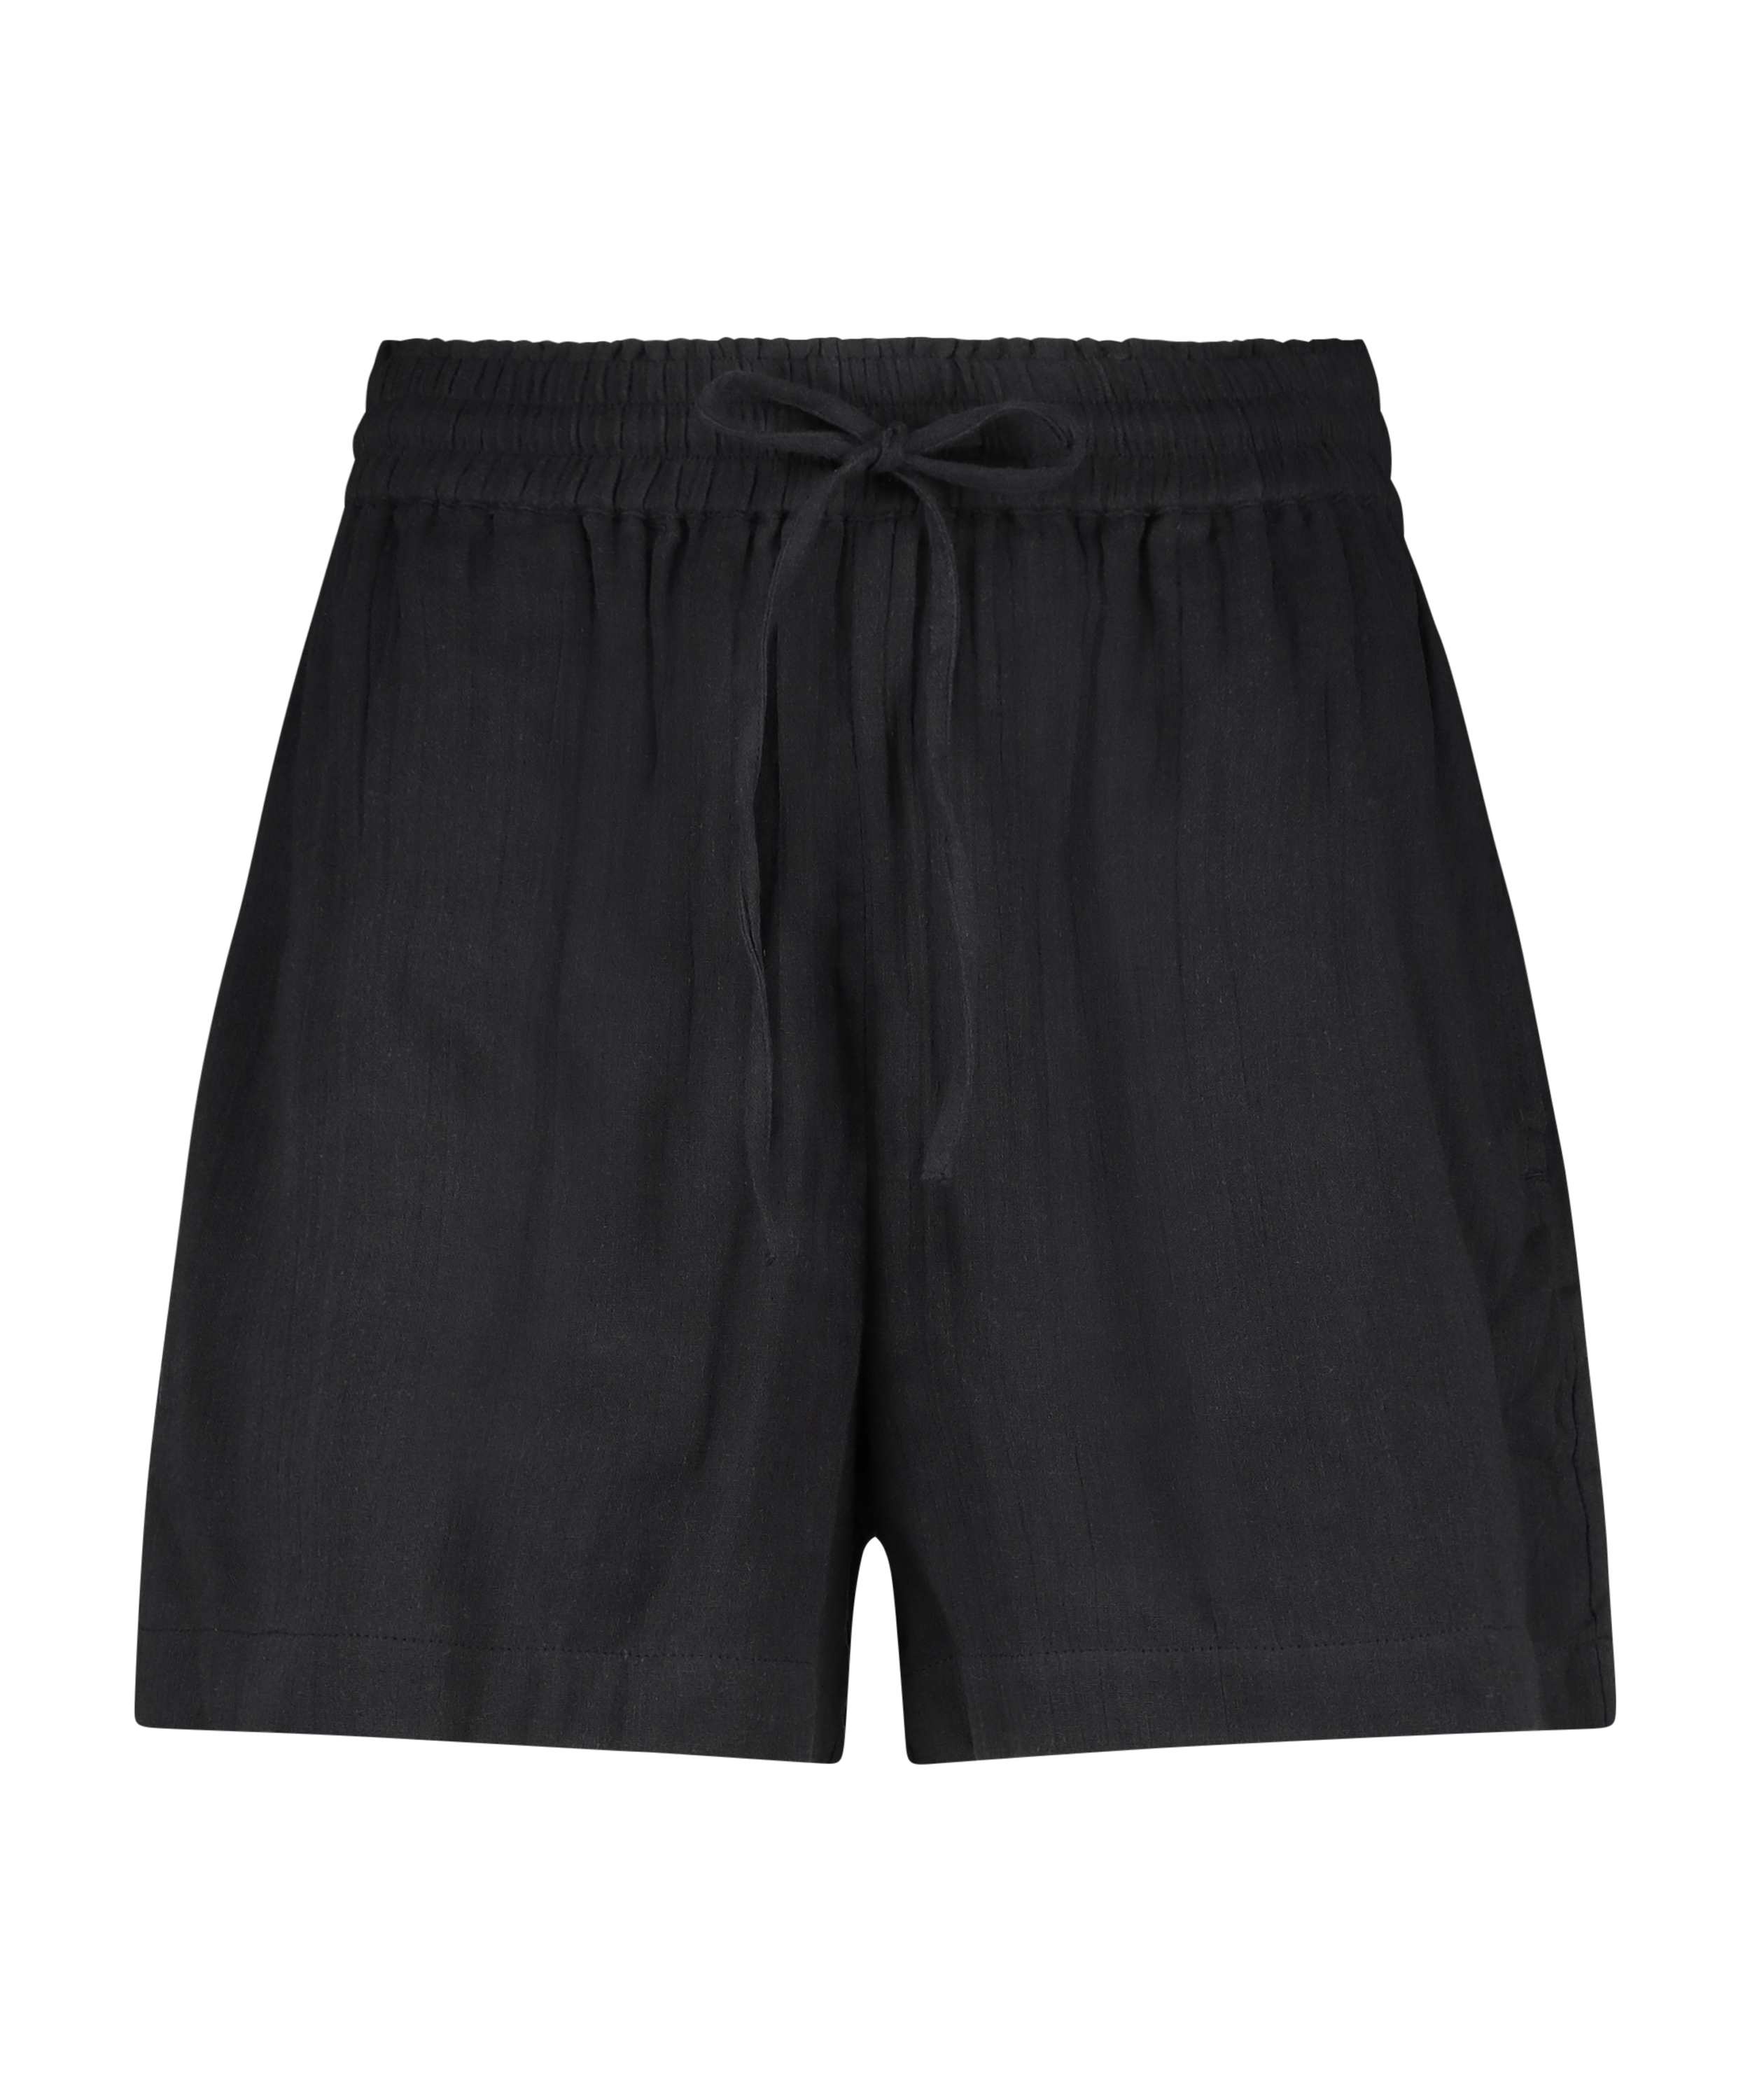 Juna shorts, Black, main